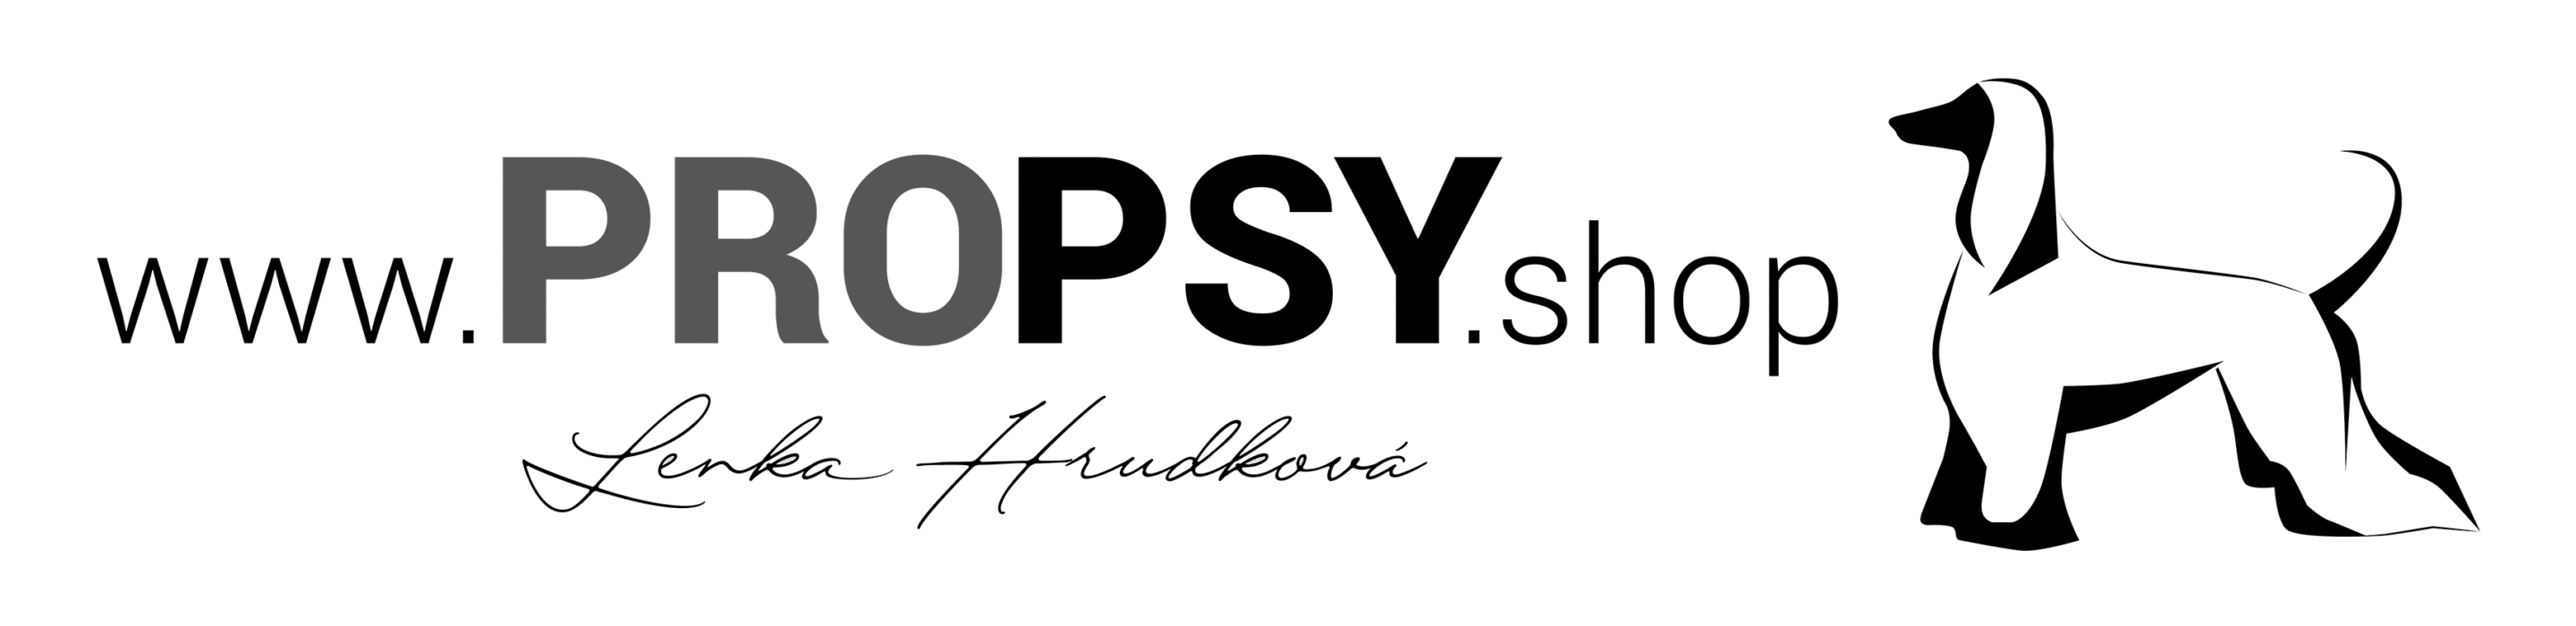 ProPsy.shop